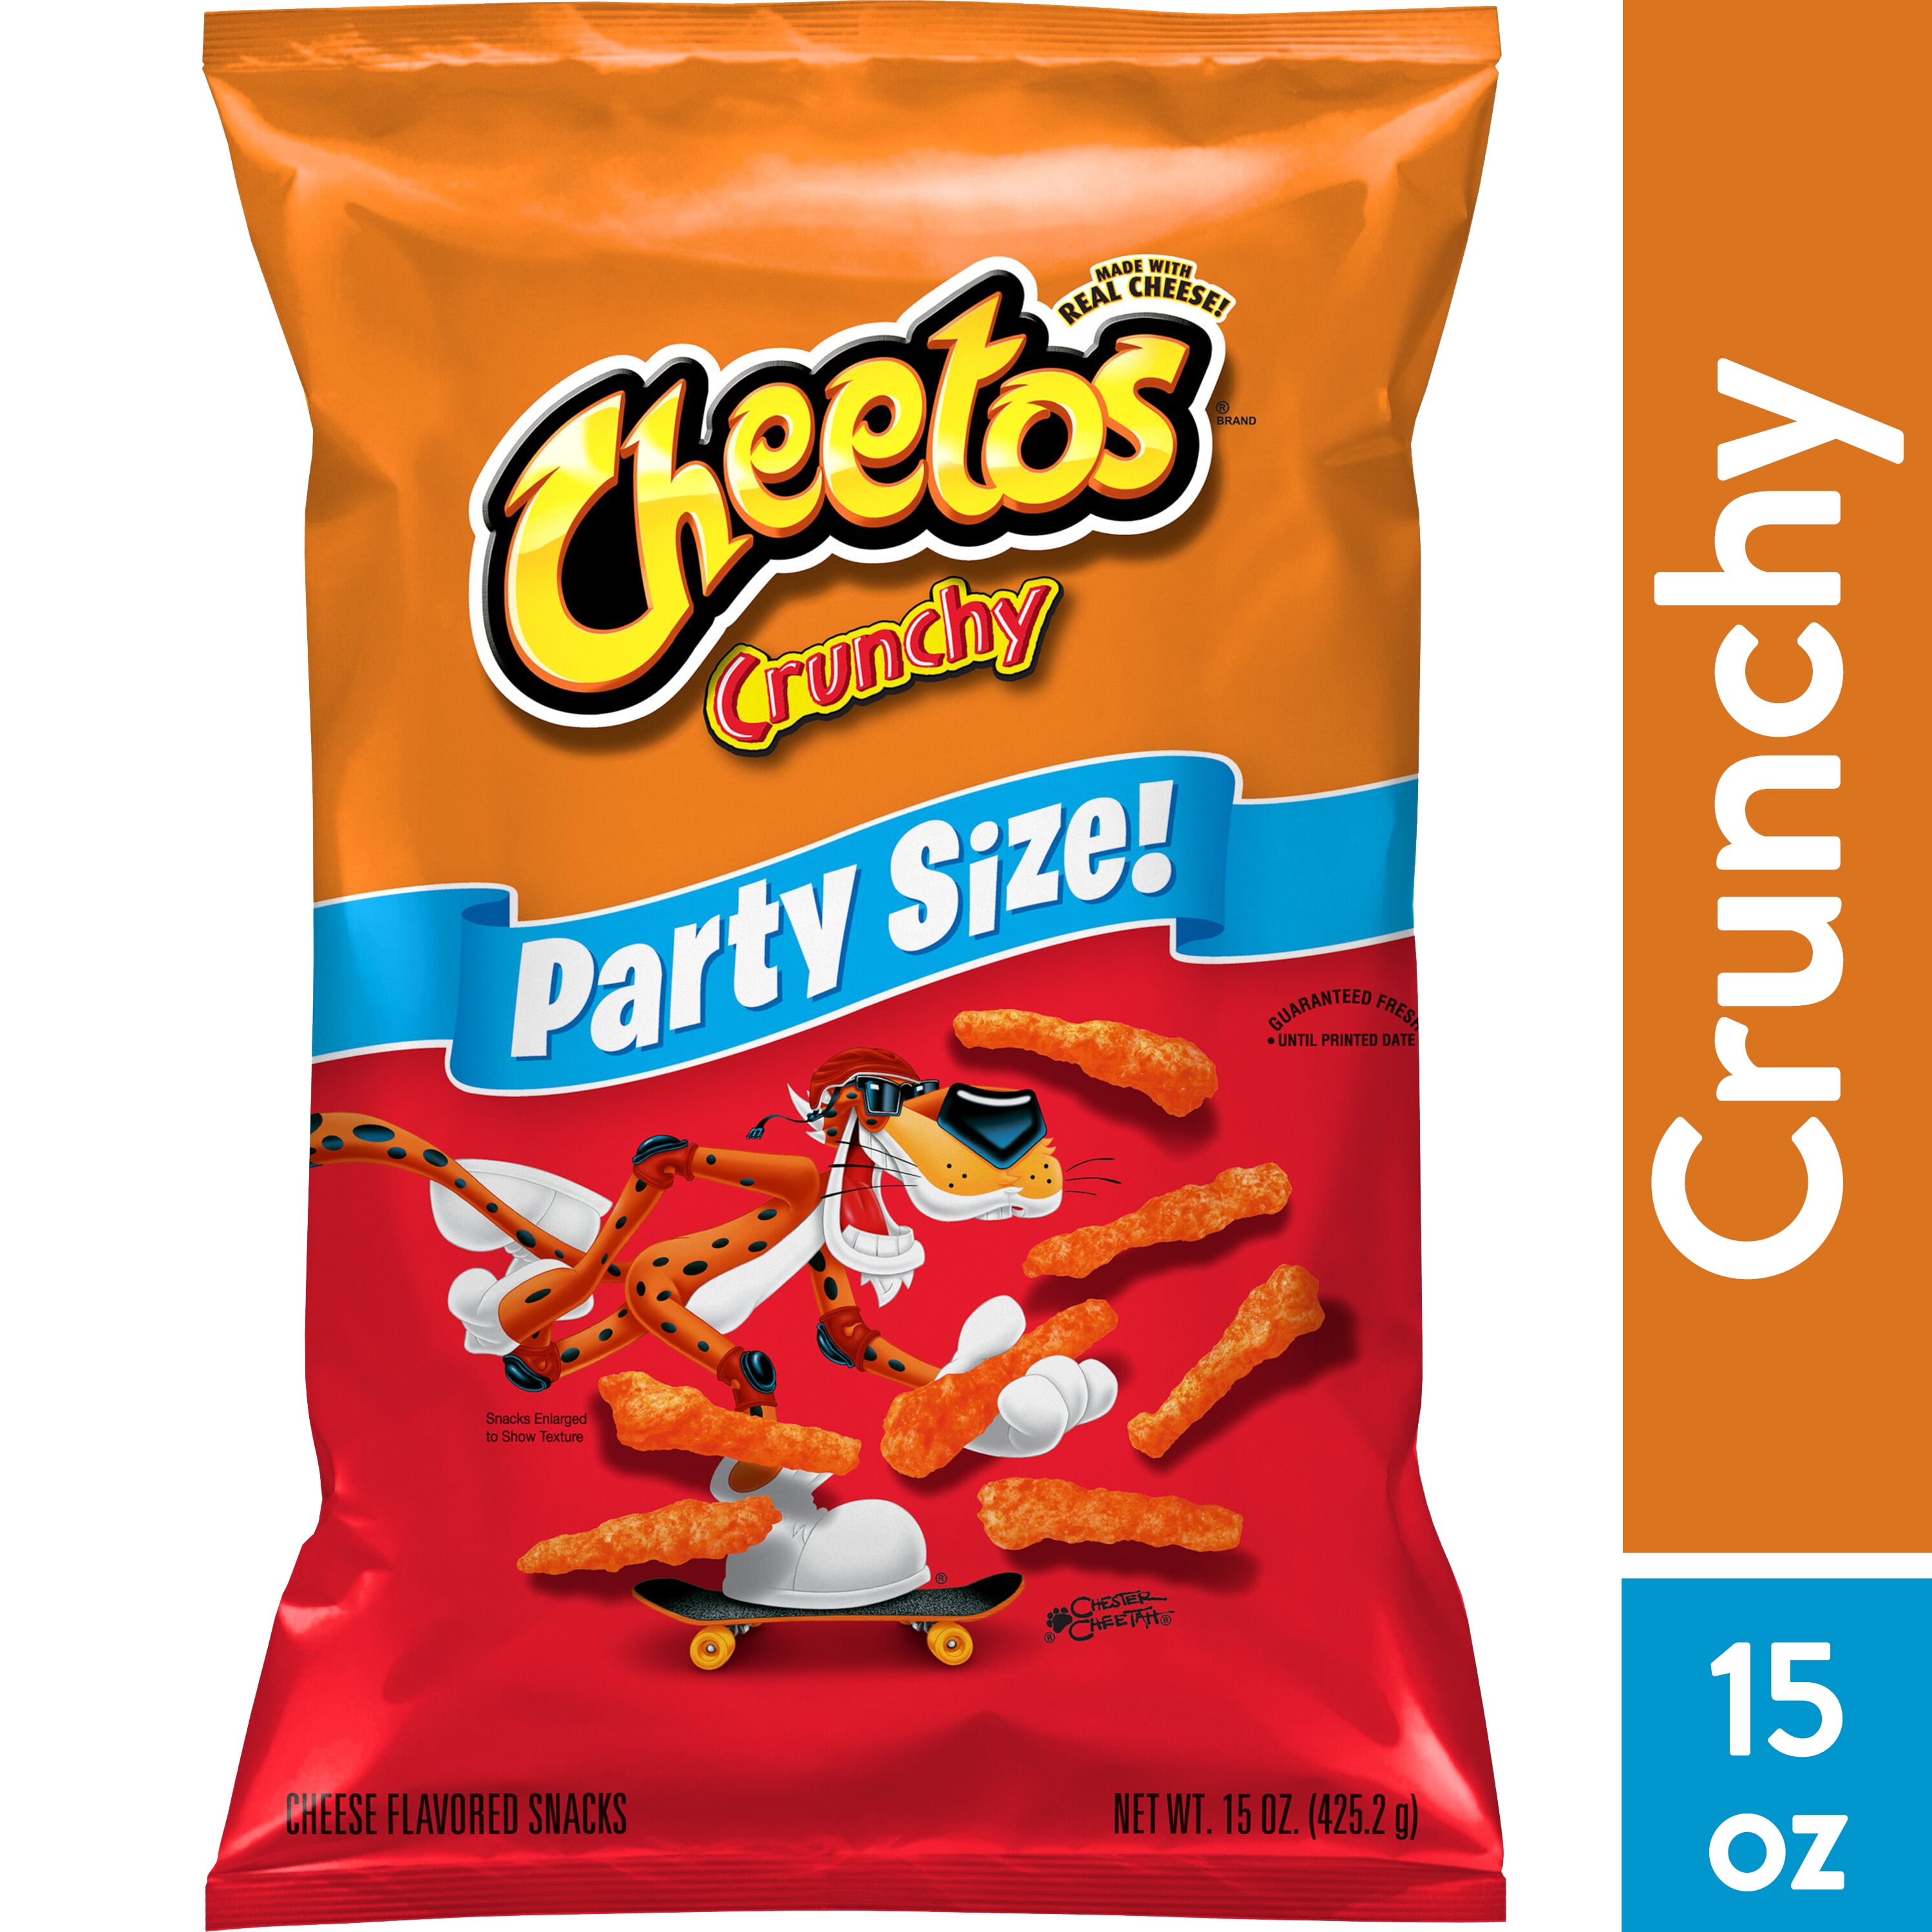 Cheetos Fantastix Variety Pack - 8 Chili Cheese & 8 Hot *PreOrder*